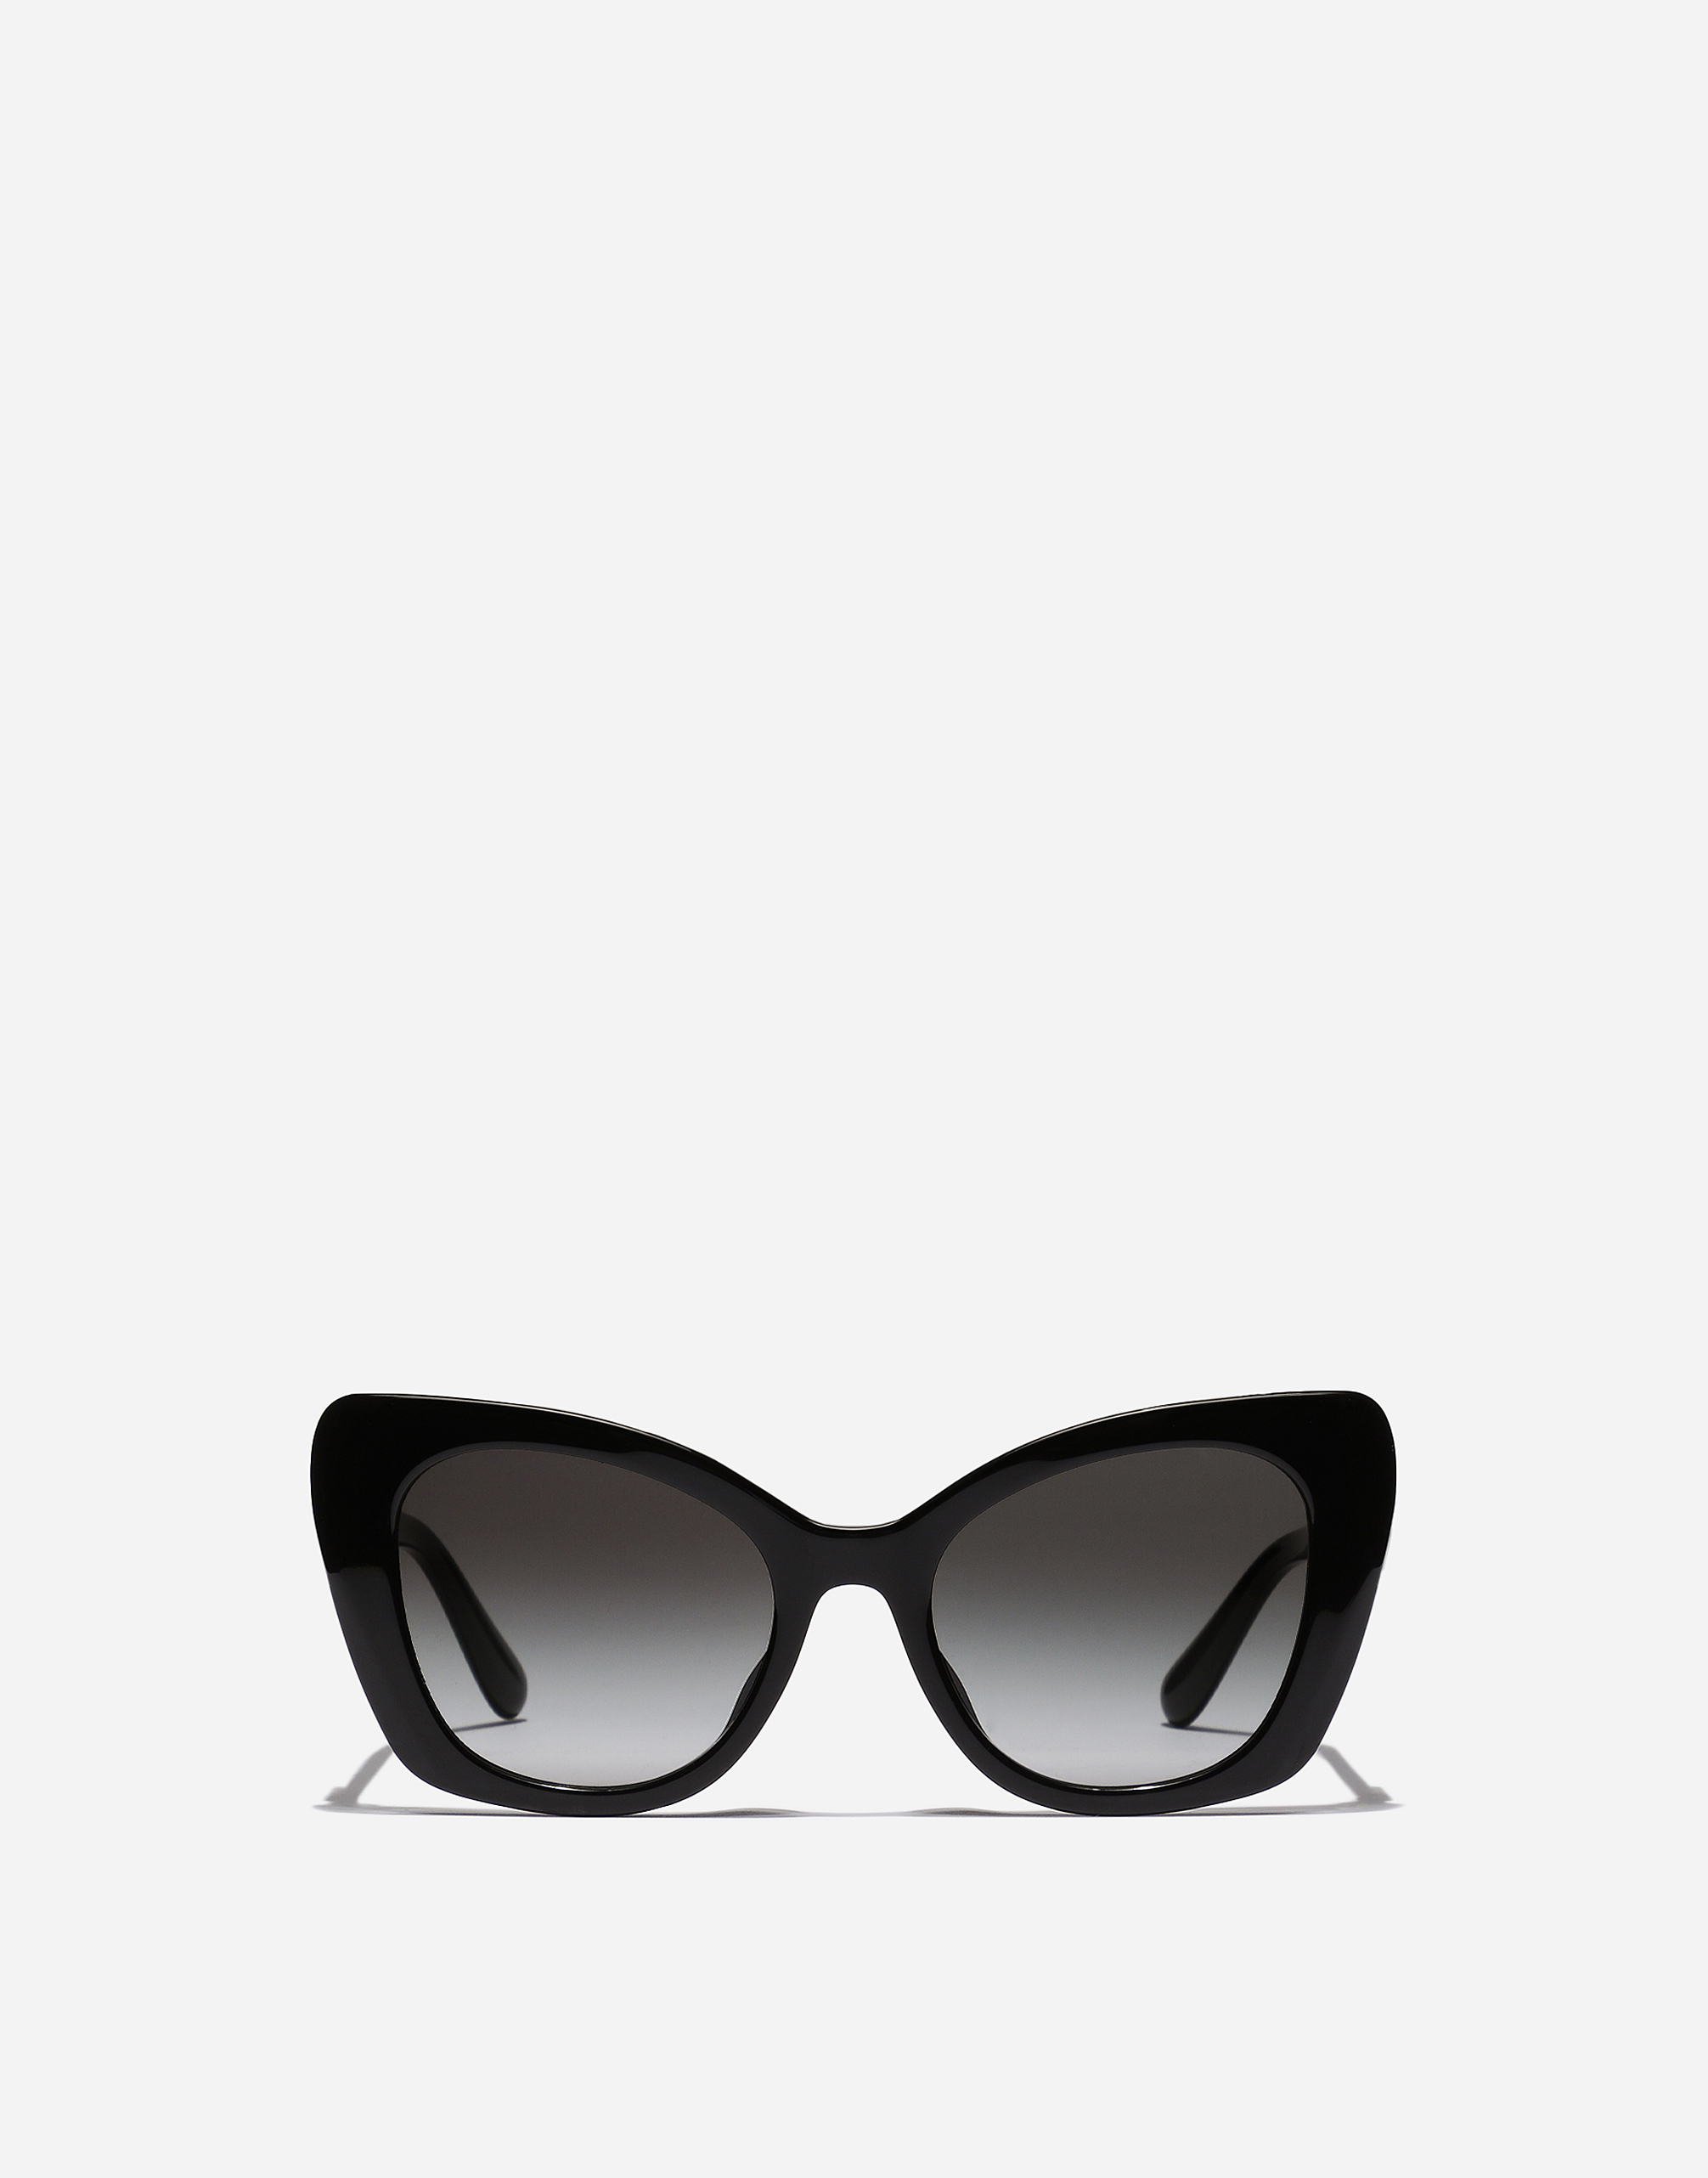 DG Crossed sunglasses in Black